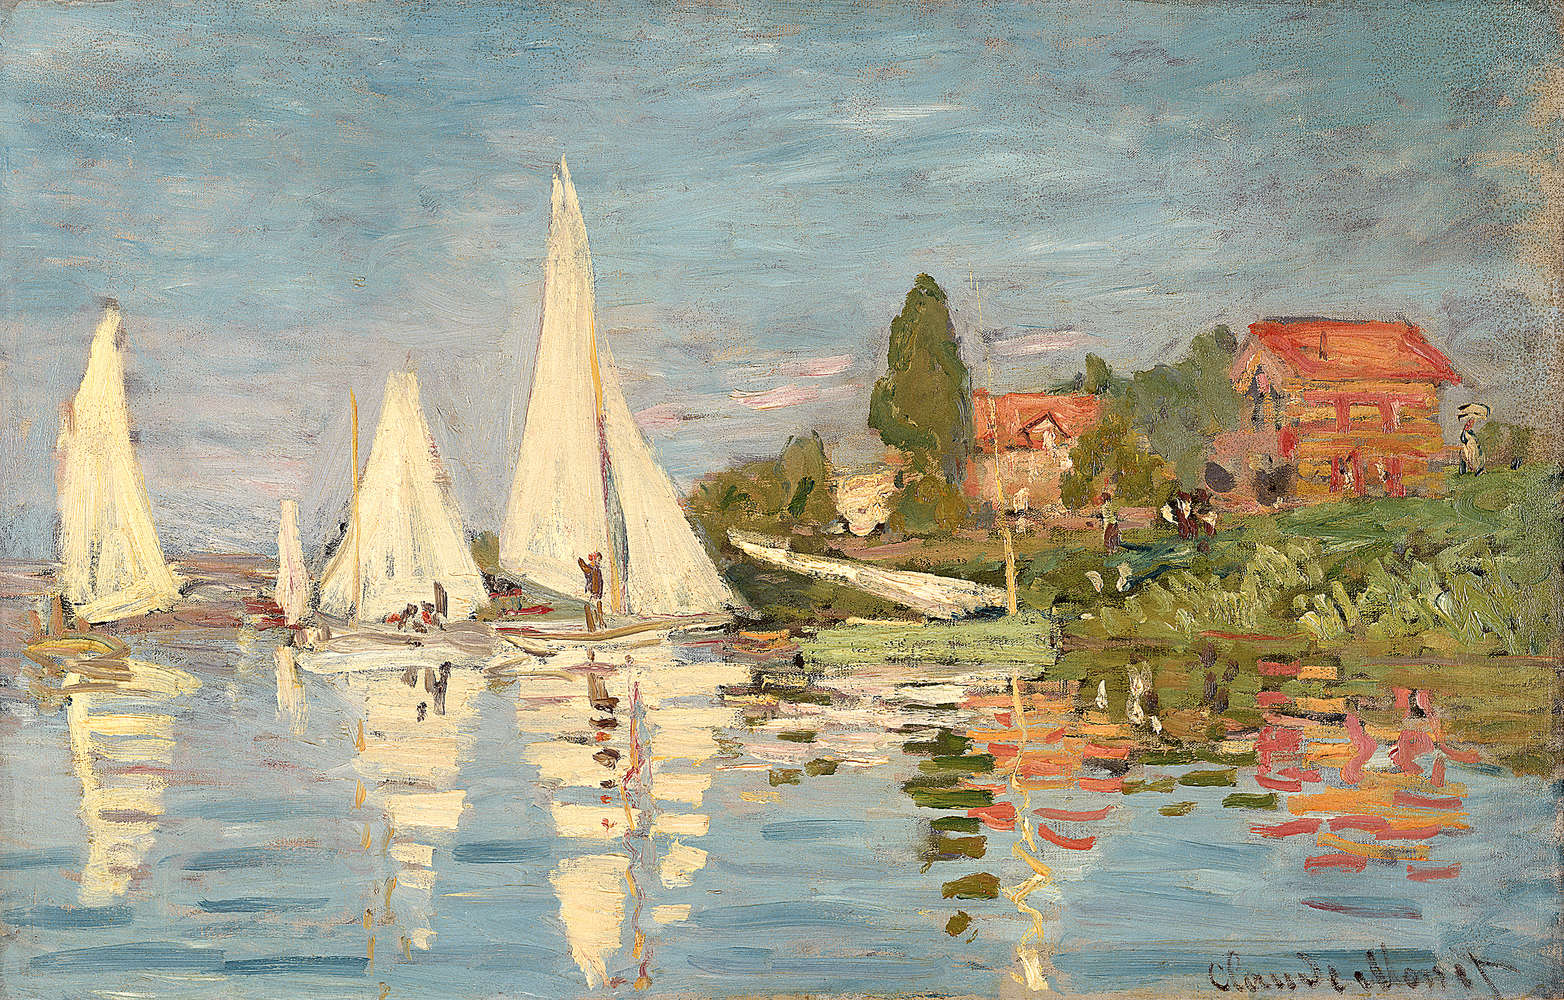             Muurschildering "Danae" van Claude Monet
        